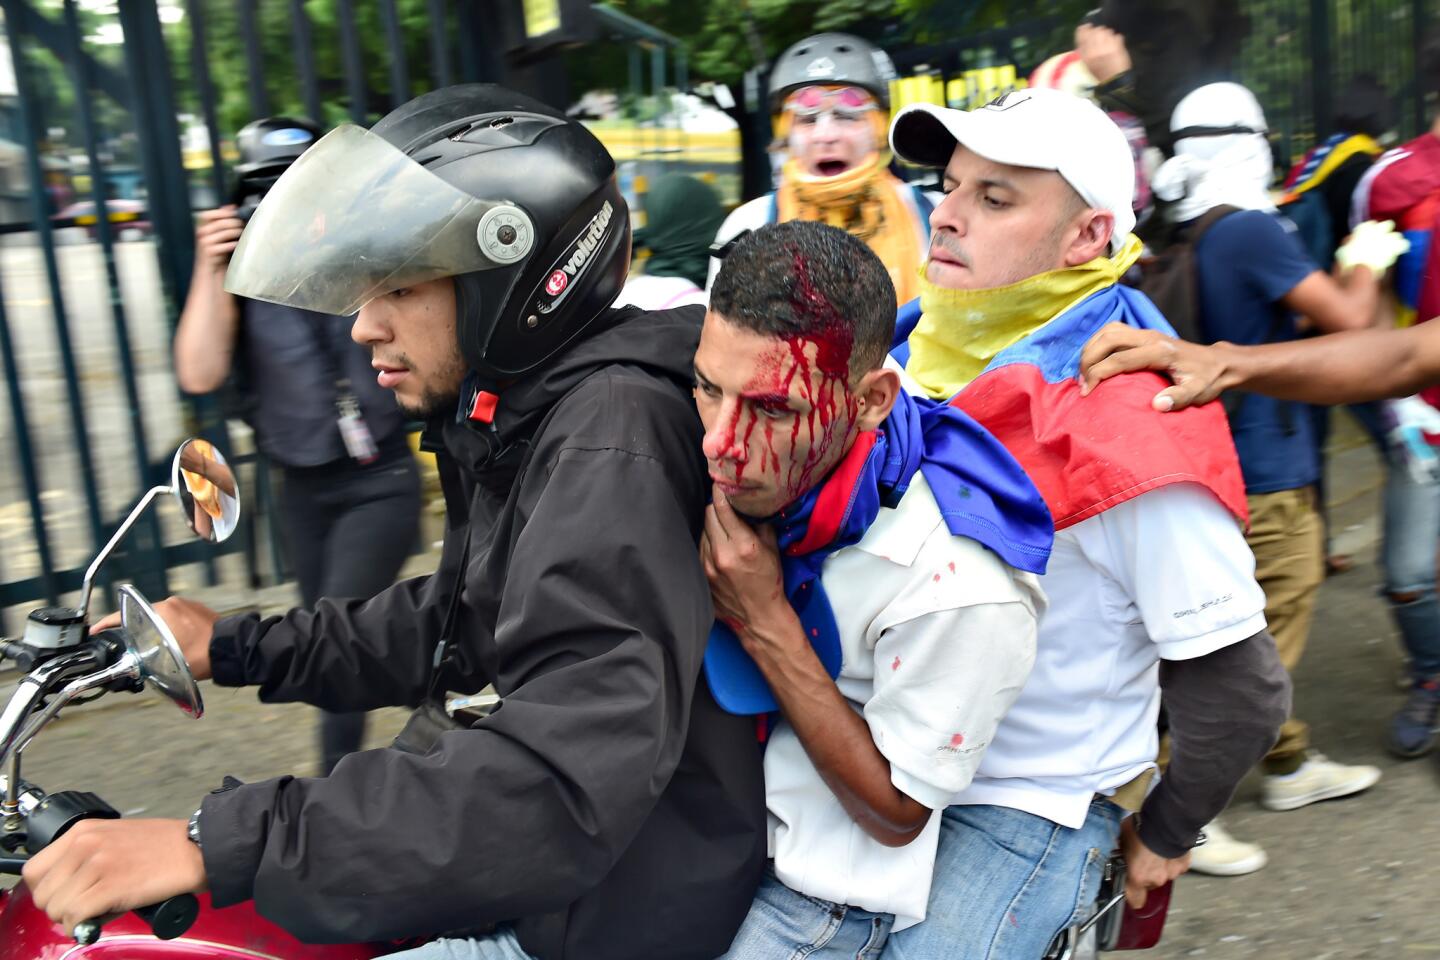 Unrest in Venezuela